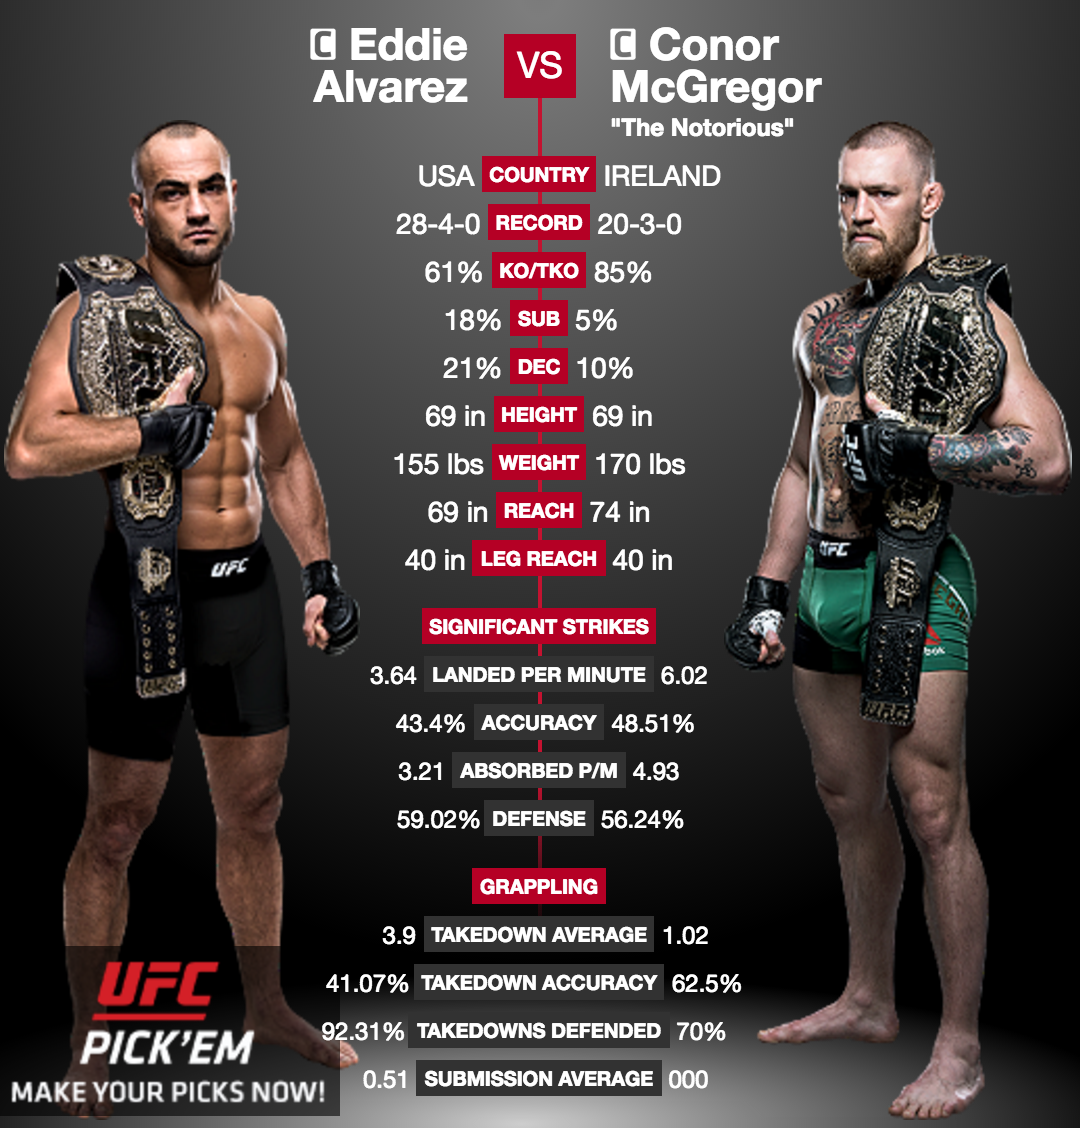 UFC 205 Conor McGregor affrontera le champion Eddie Alvarez